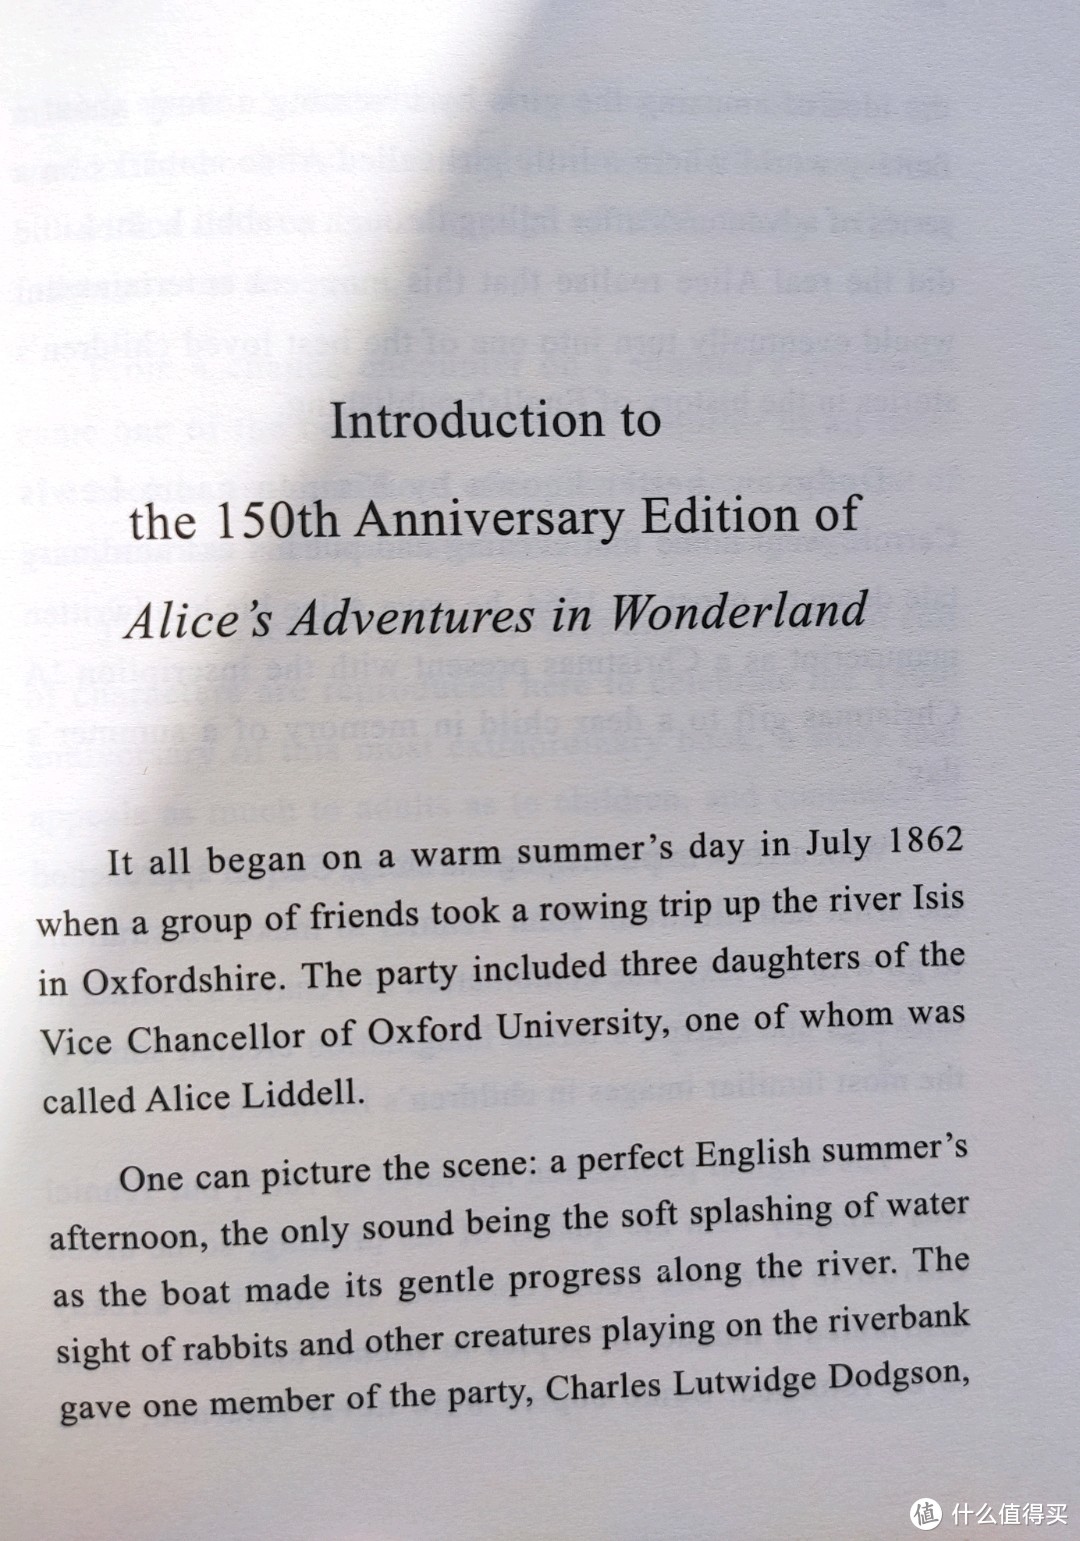 海豚出版社150周年纪念版《爱丽丝男友奇境》小晒